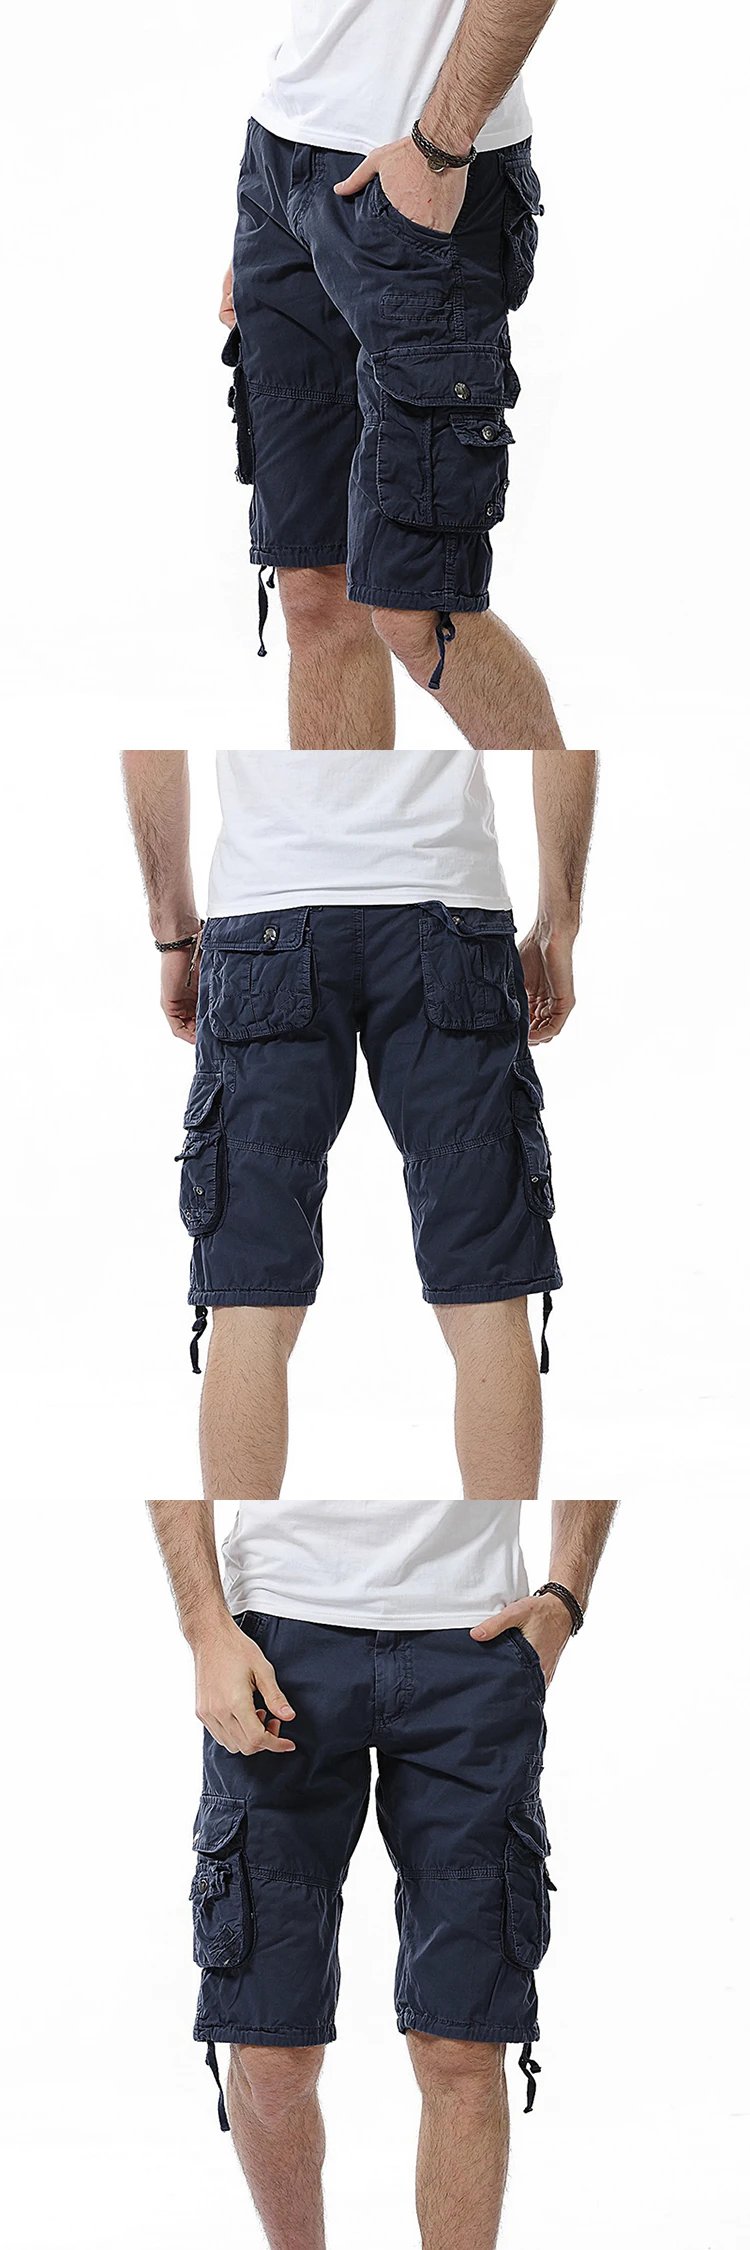 Свободные камуфляжные шорты Карго из чистого хлопка для мужчин, летние, для альпинизма, спорта, рыбалки, пляжа, с несколькими карманами, прямые короткие брюки, комбинезоны